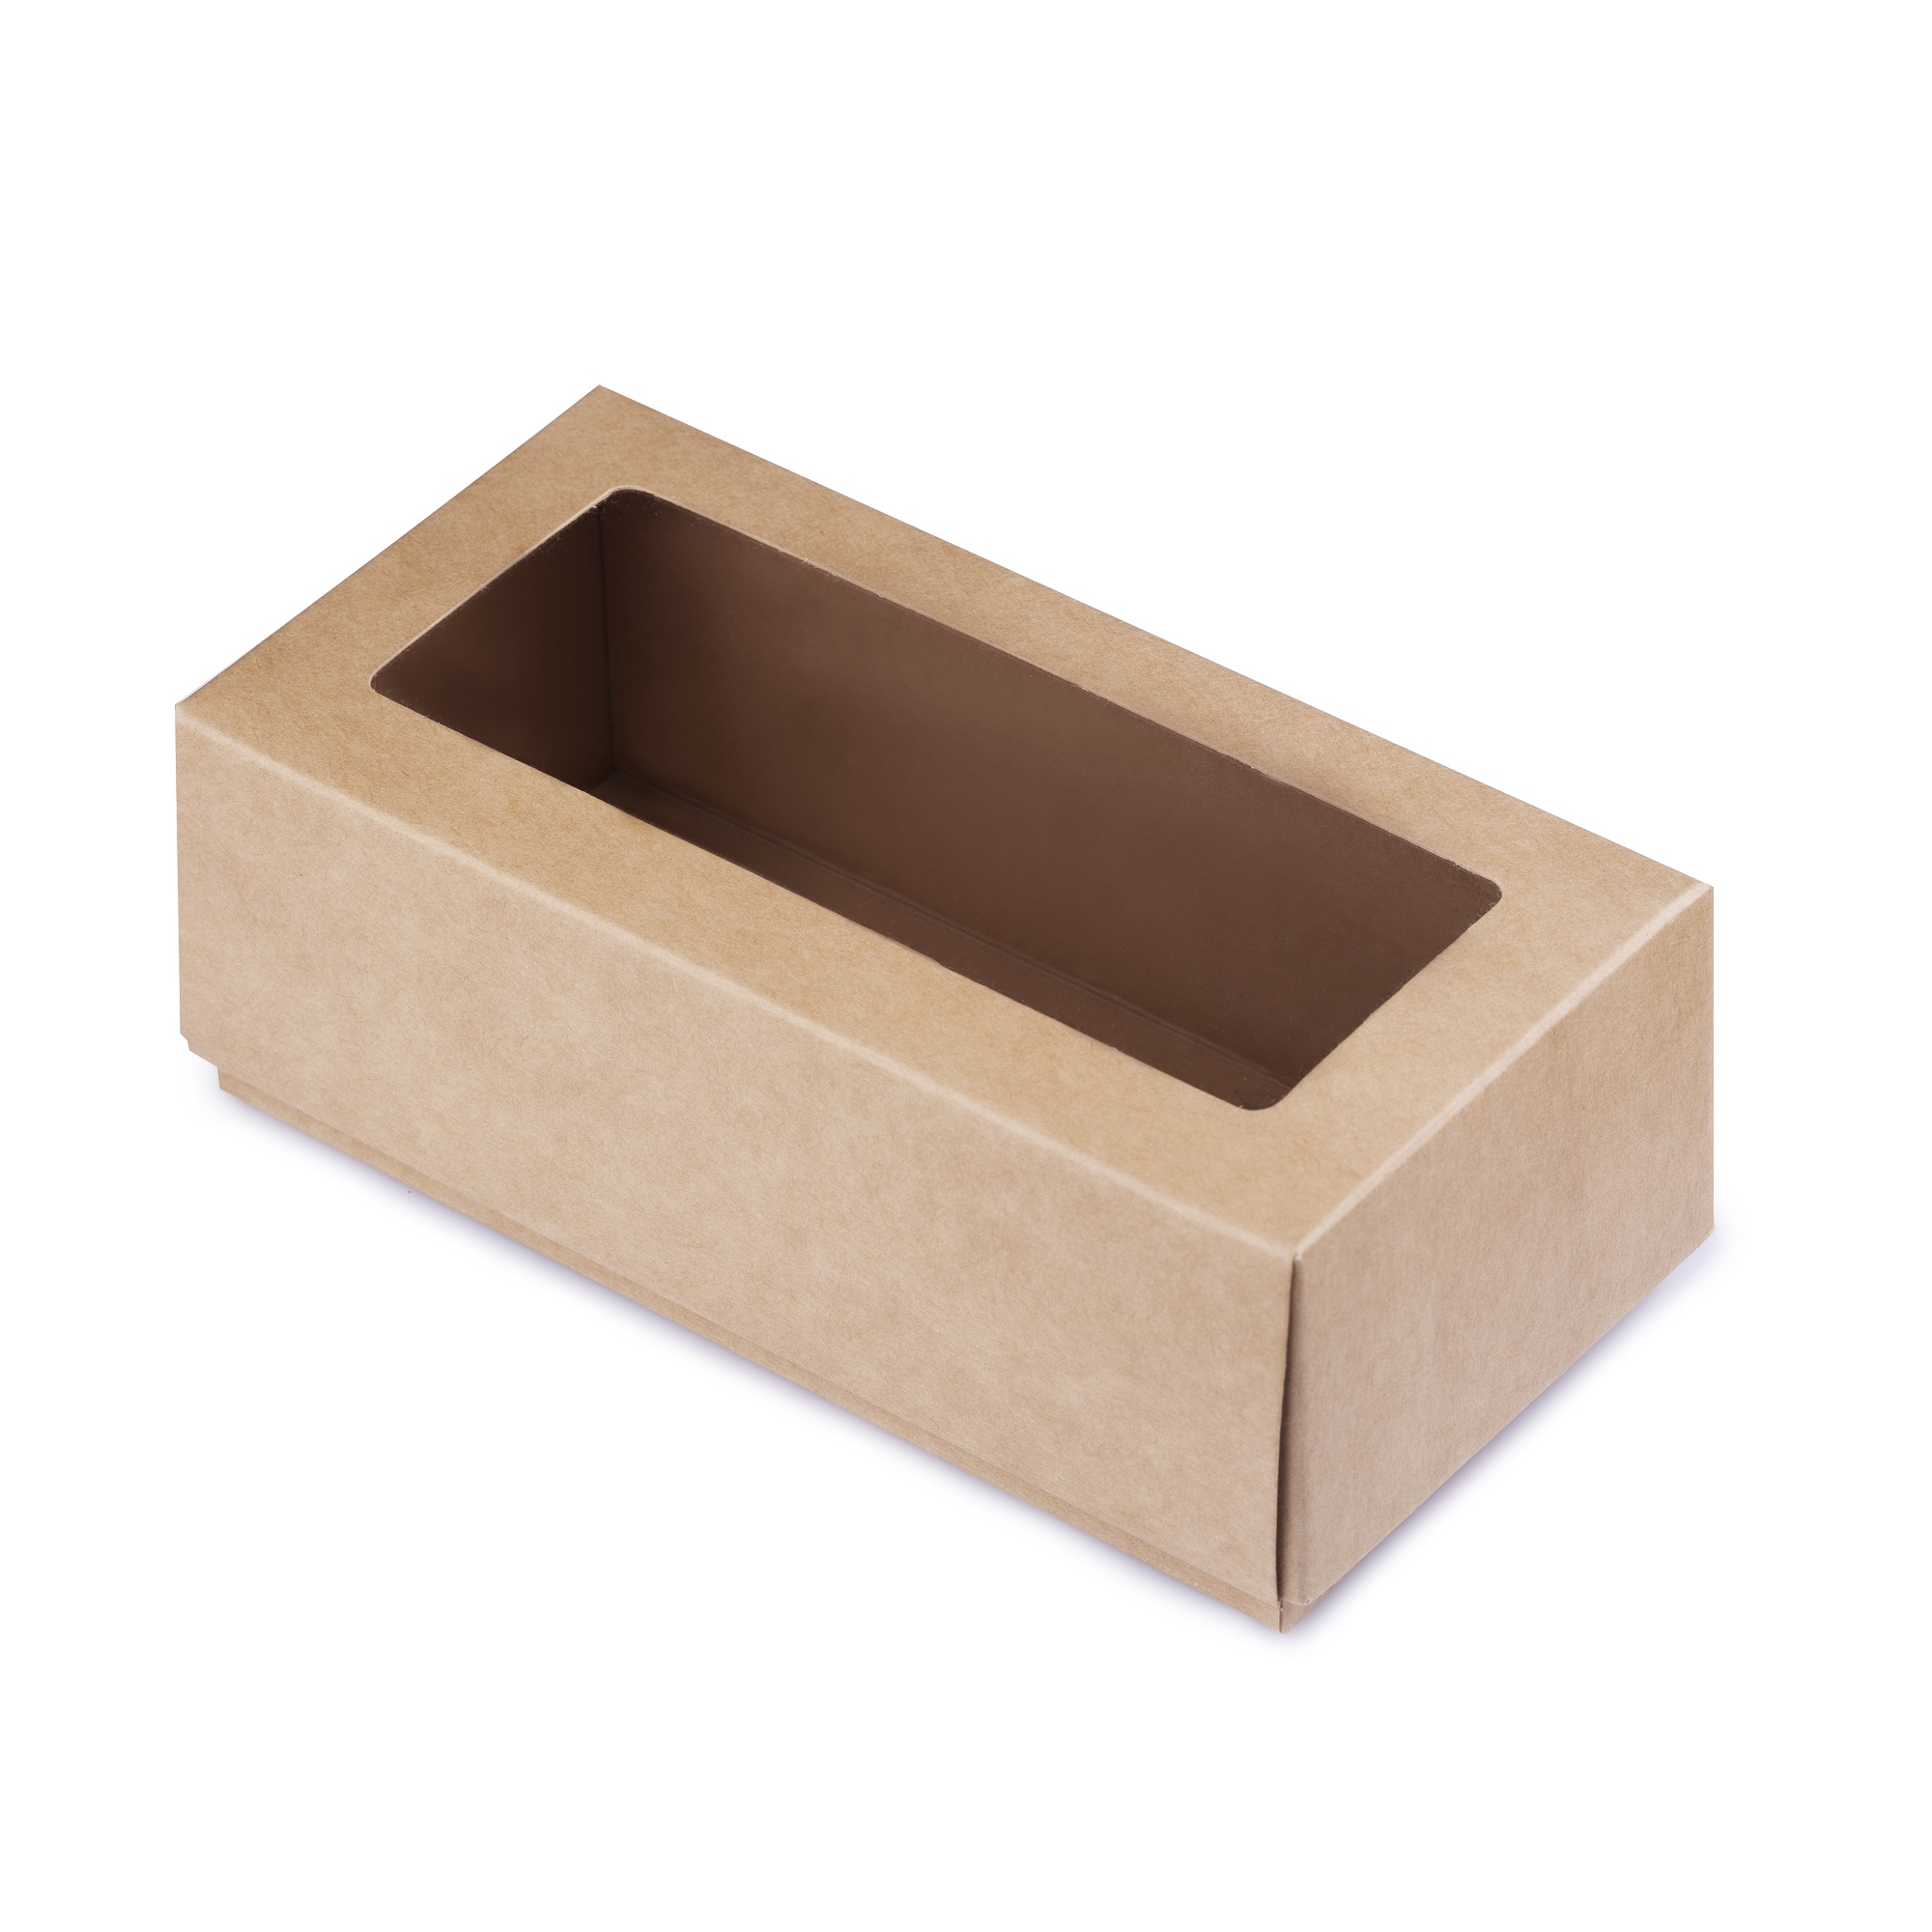 Коробка с окошком из картона, 15*7,5*5,5 см 